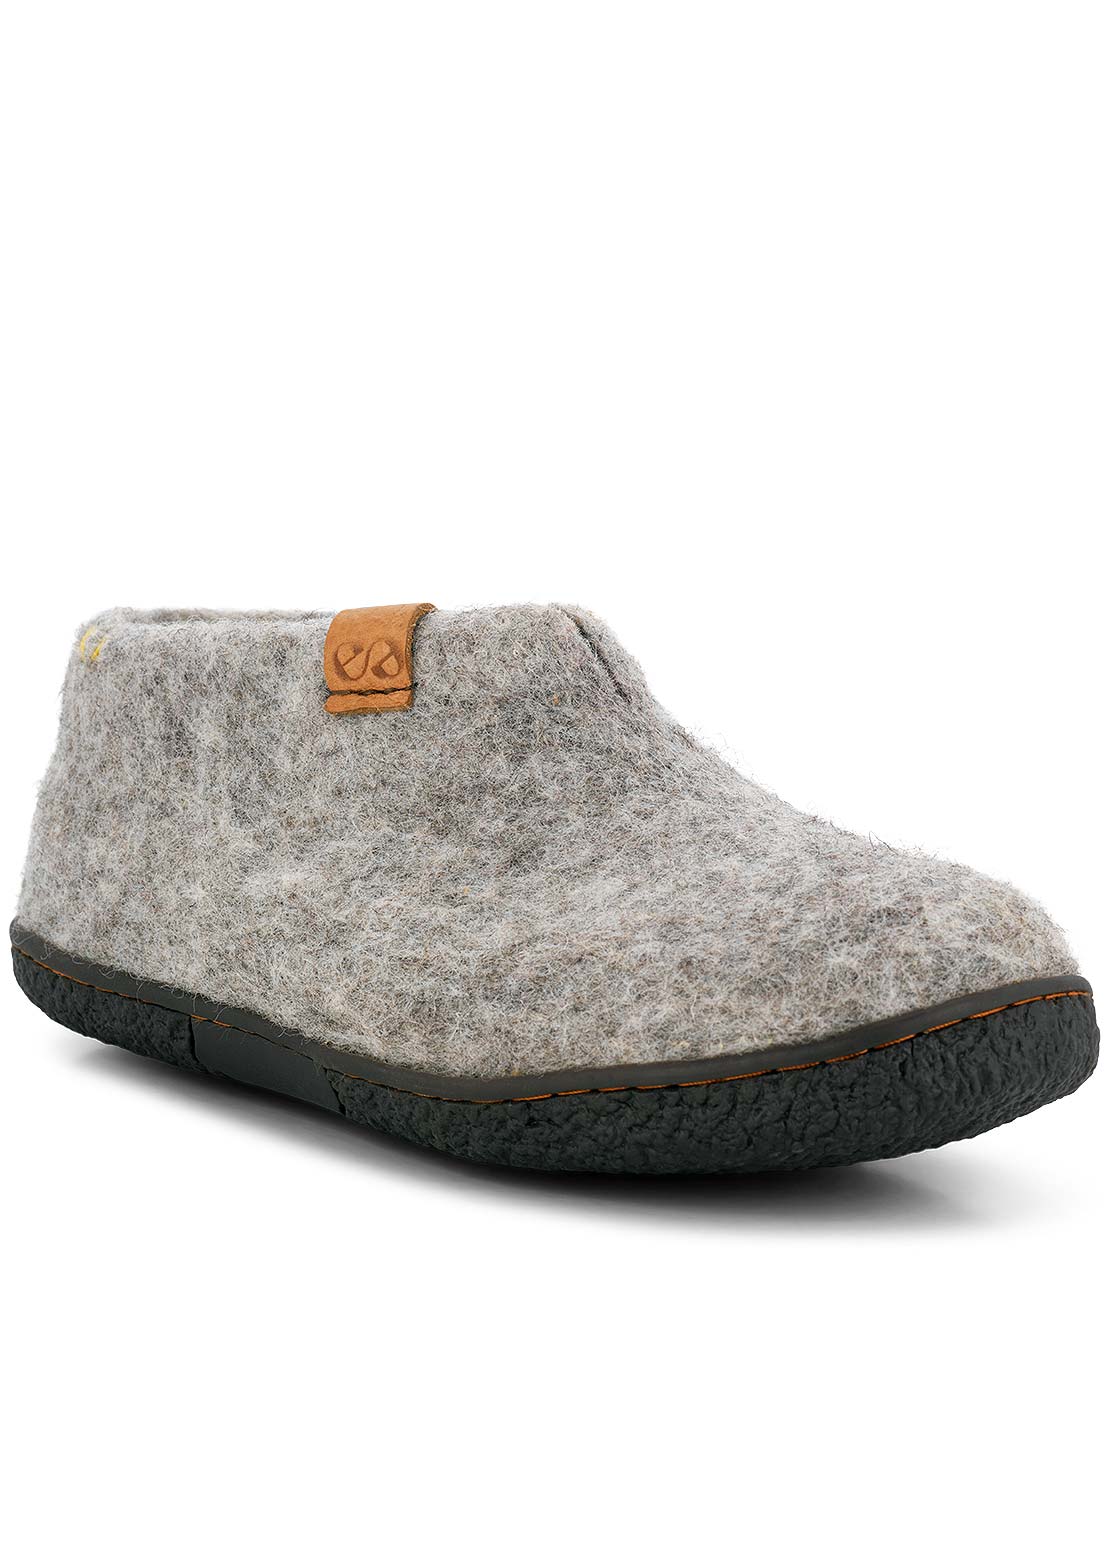 Wool by Green Unisex Pumori Rubber Sole Open Heel Slippers Light grey